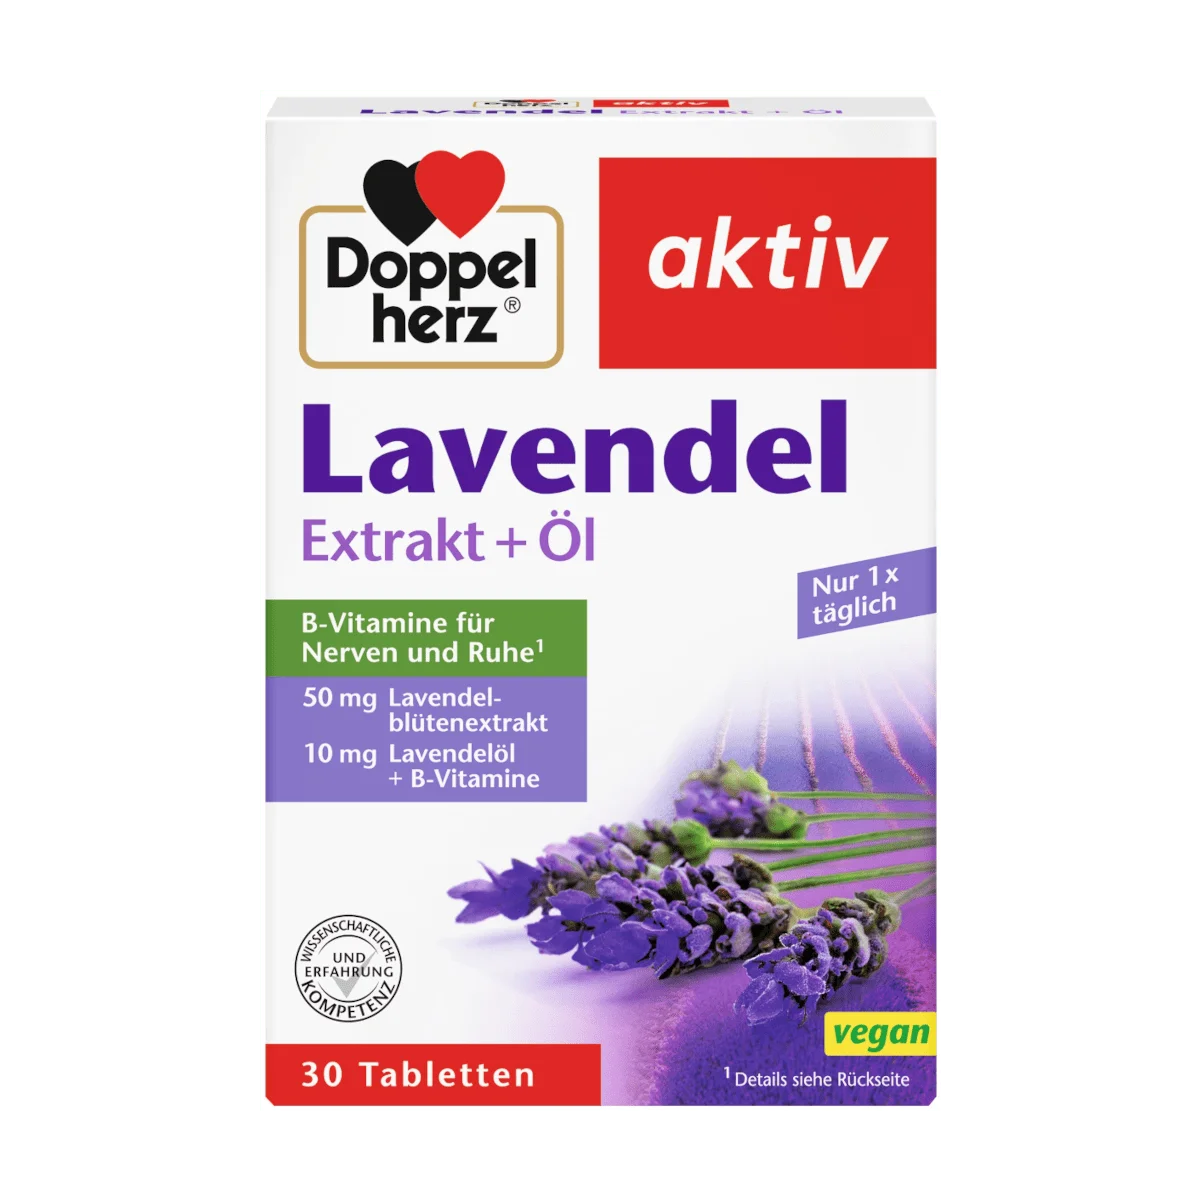 Doppelherz Lavendel Extrakt + Öl, 30 Tbl